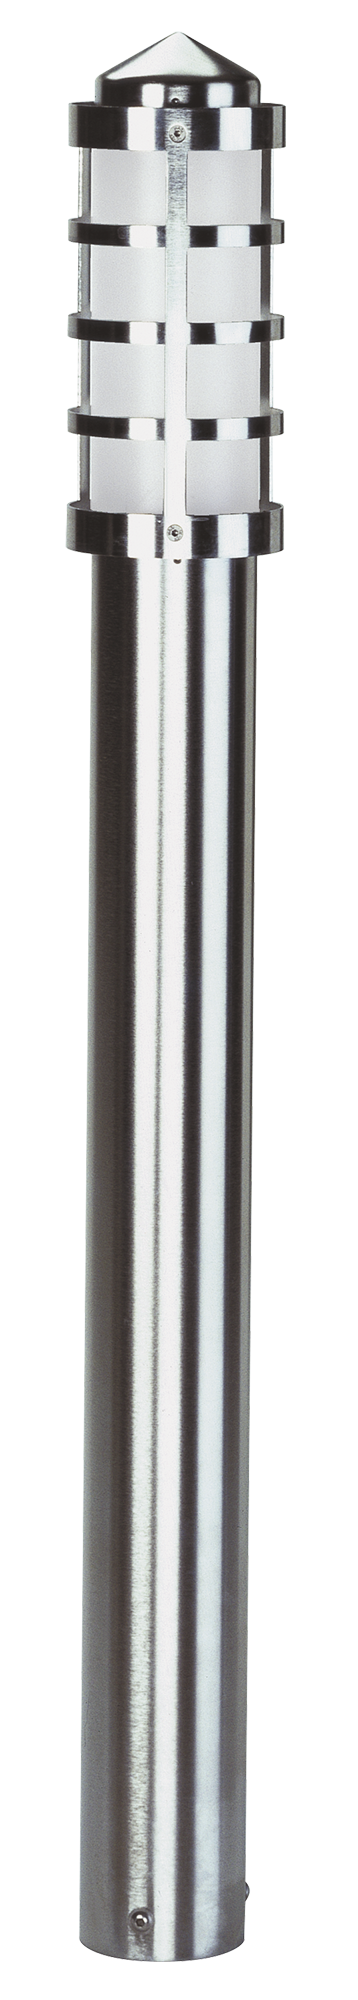 Bodenleuchten, Pollerleuchten, Kandelaber & Bodenlampen für außen von Albert Leuchten Pollerleuchte Typ Nr. 2284 - Edelstahl, für 1 x Lampe, E27 692284